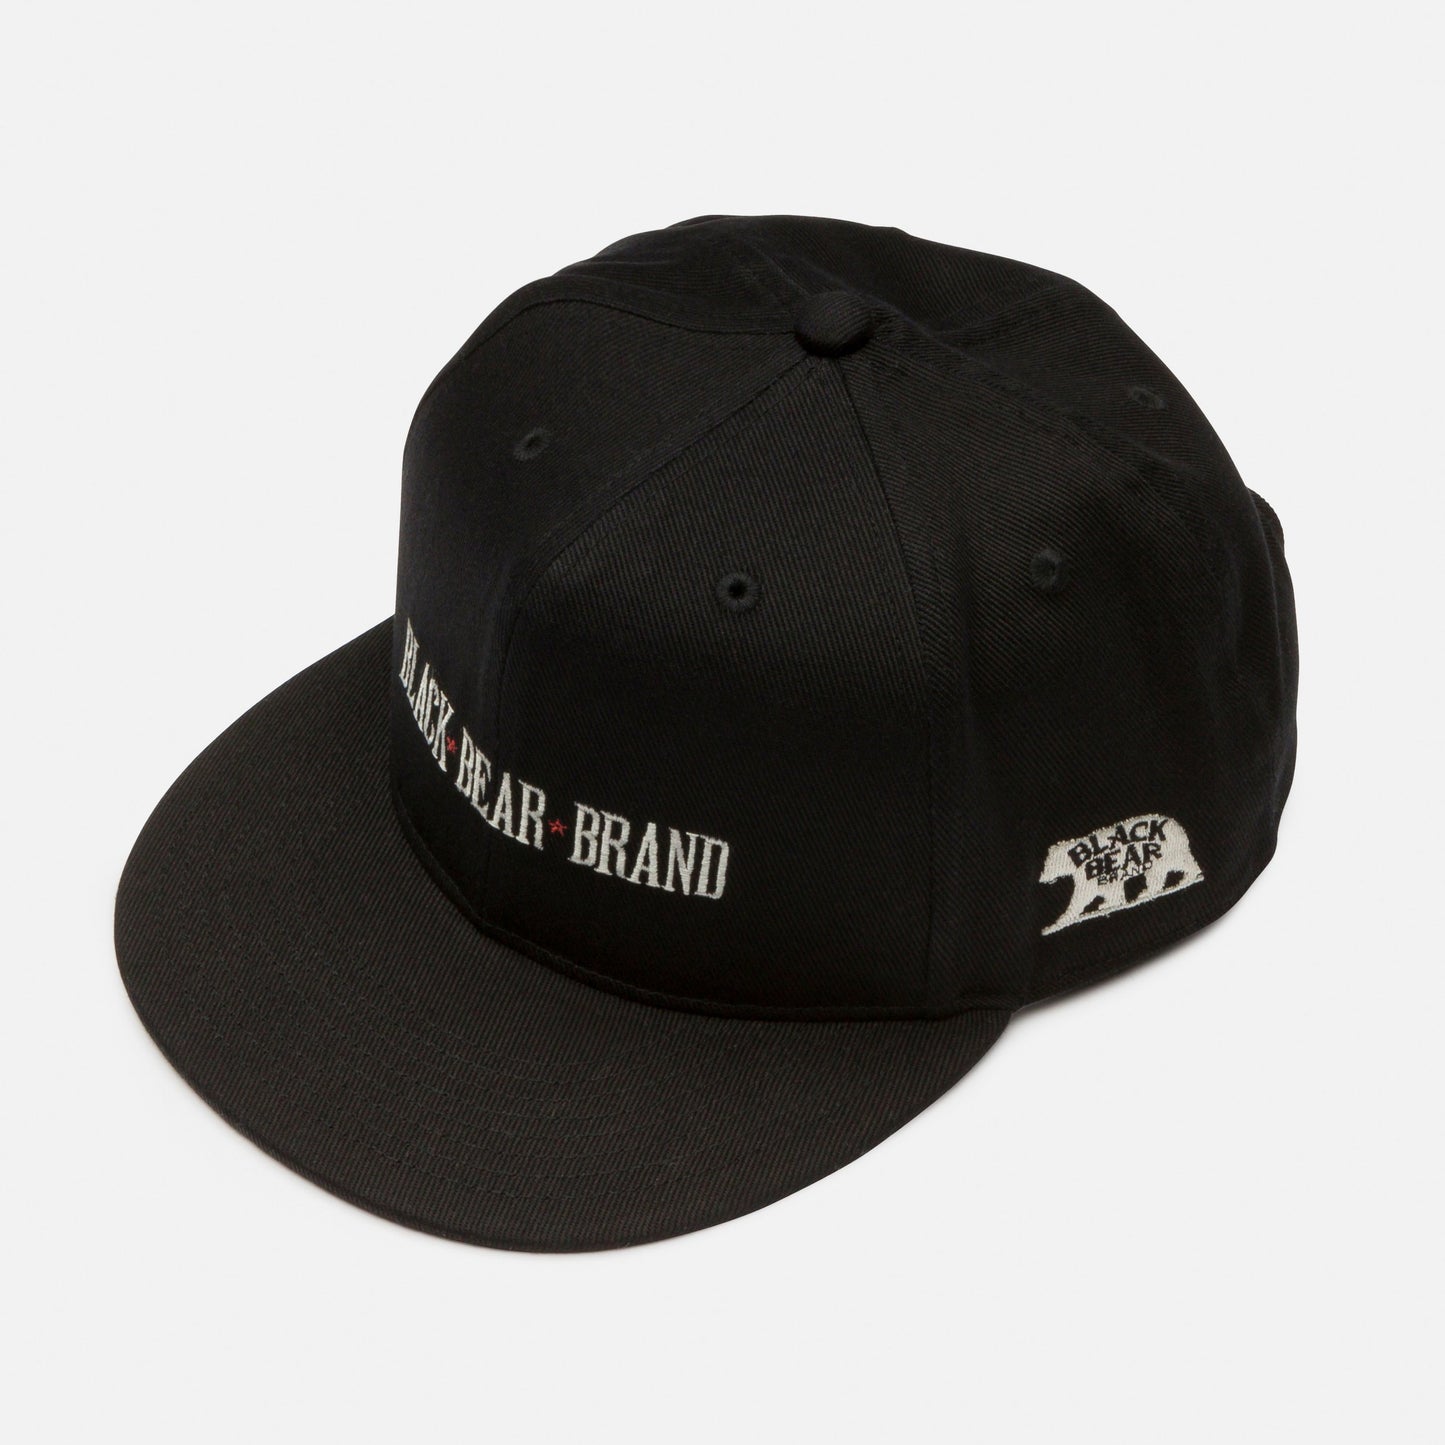 Black Bear Brand - BLACK Made in Japan BASEBALL Hat